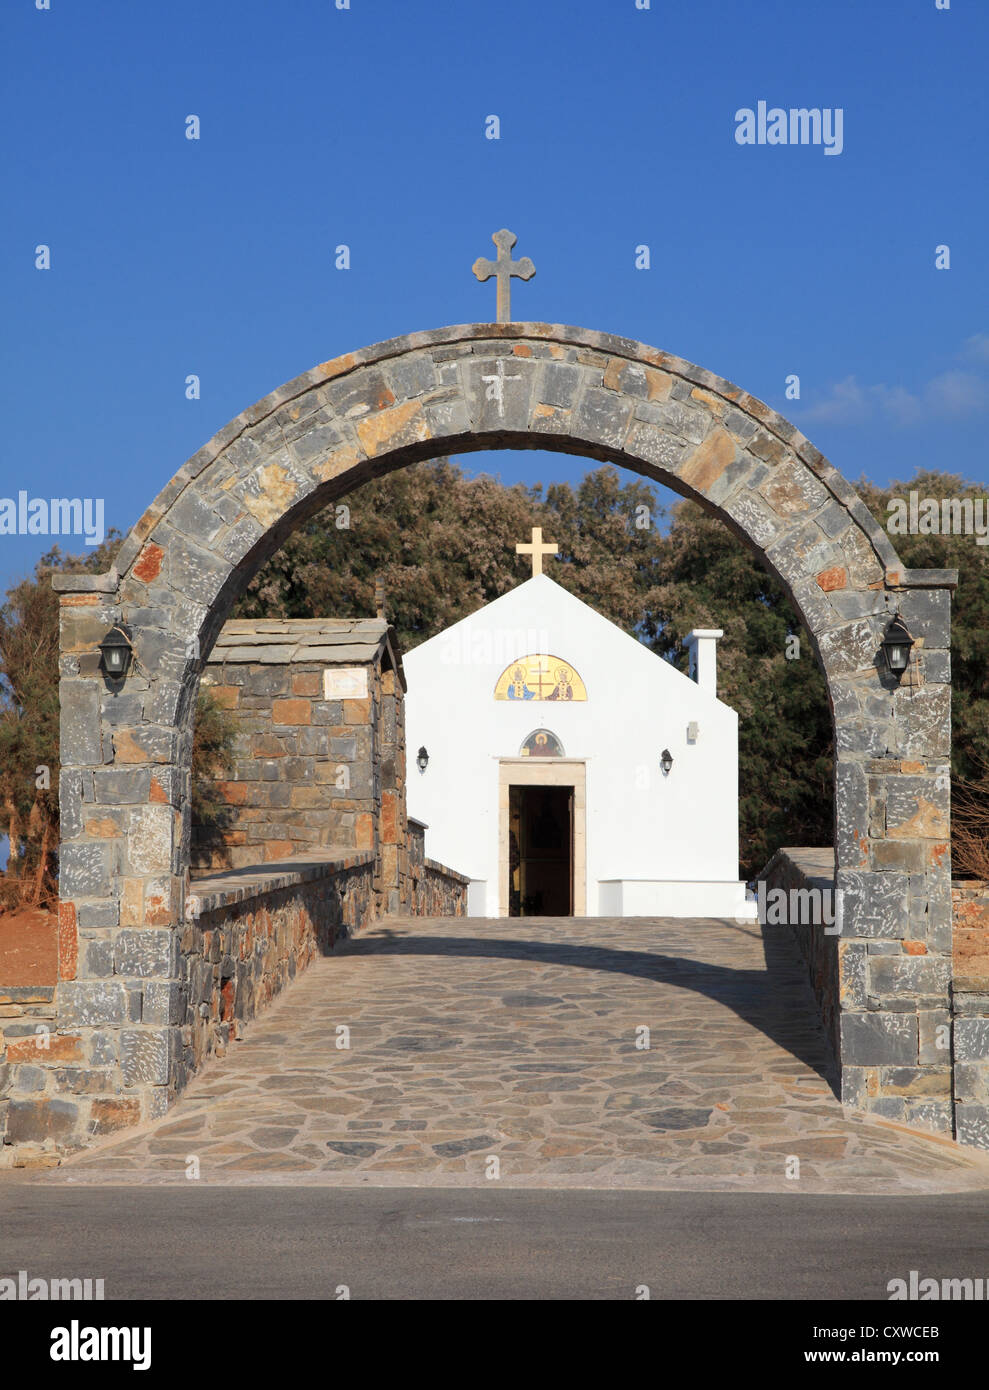 Eglise des saints Constantin et Hélène à Kato Gouves, Crète, Grèce Europe du sud Banque D'Images